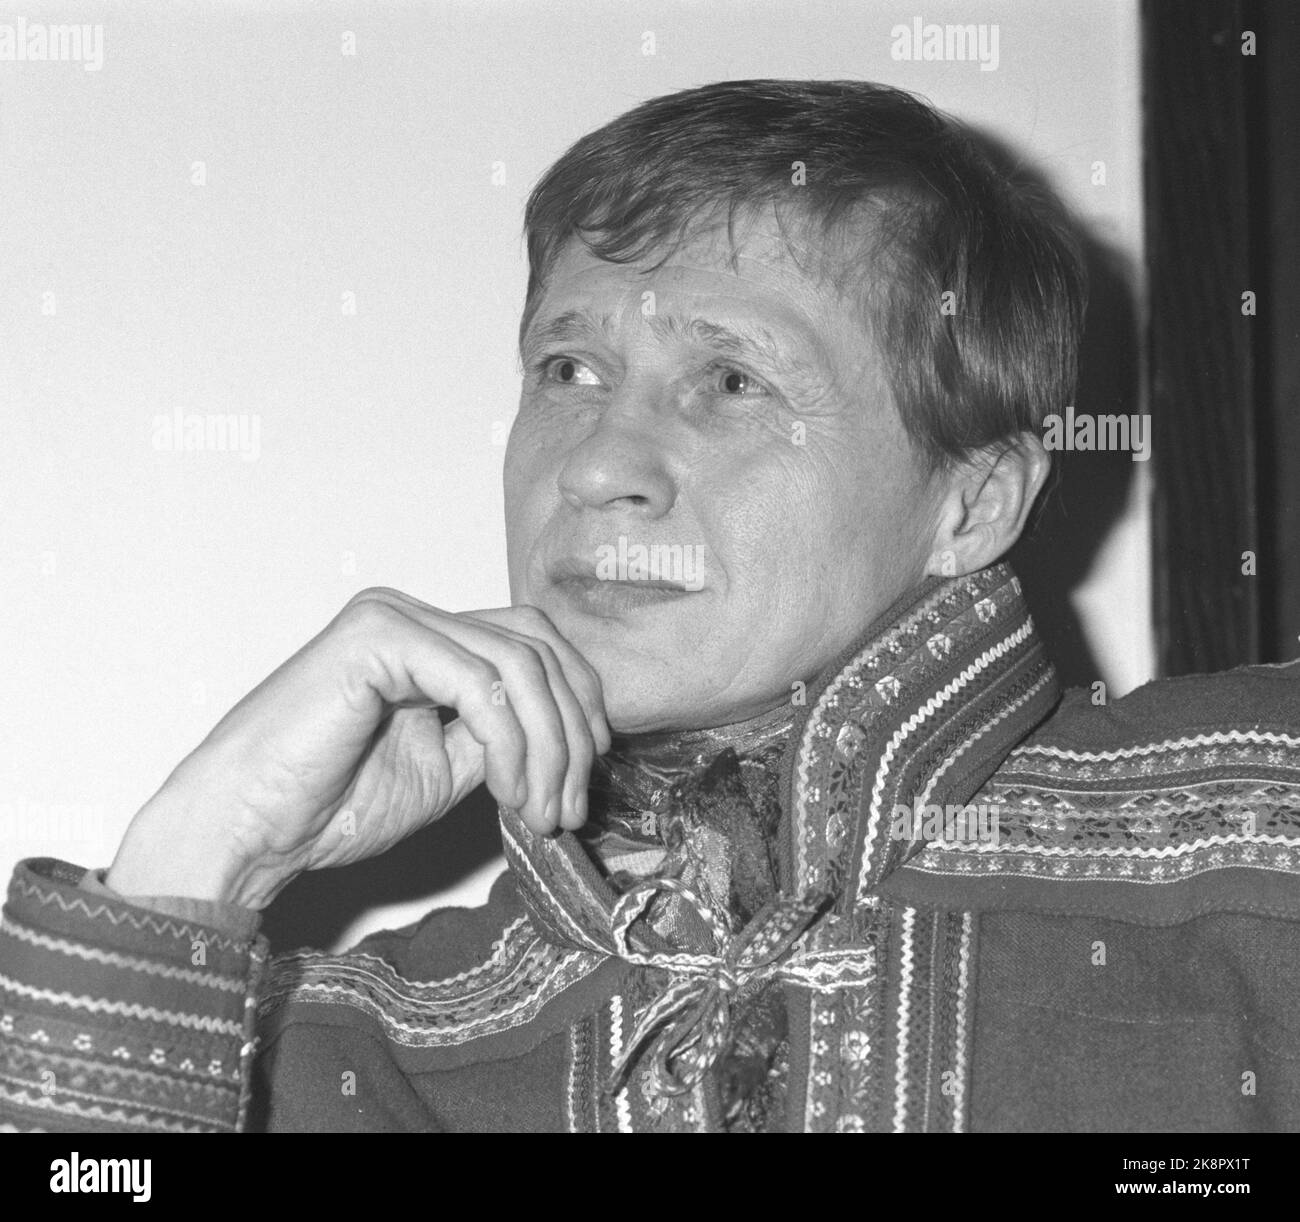 Oslo 19890120. Ritratto dell'artista Nils-Aslak Valkeapää a Sami. Mano fino al viso. Foto: P.L. Archivio Tonstad NTB / NTB Foto Stock